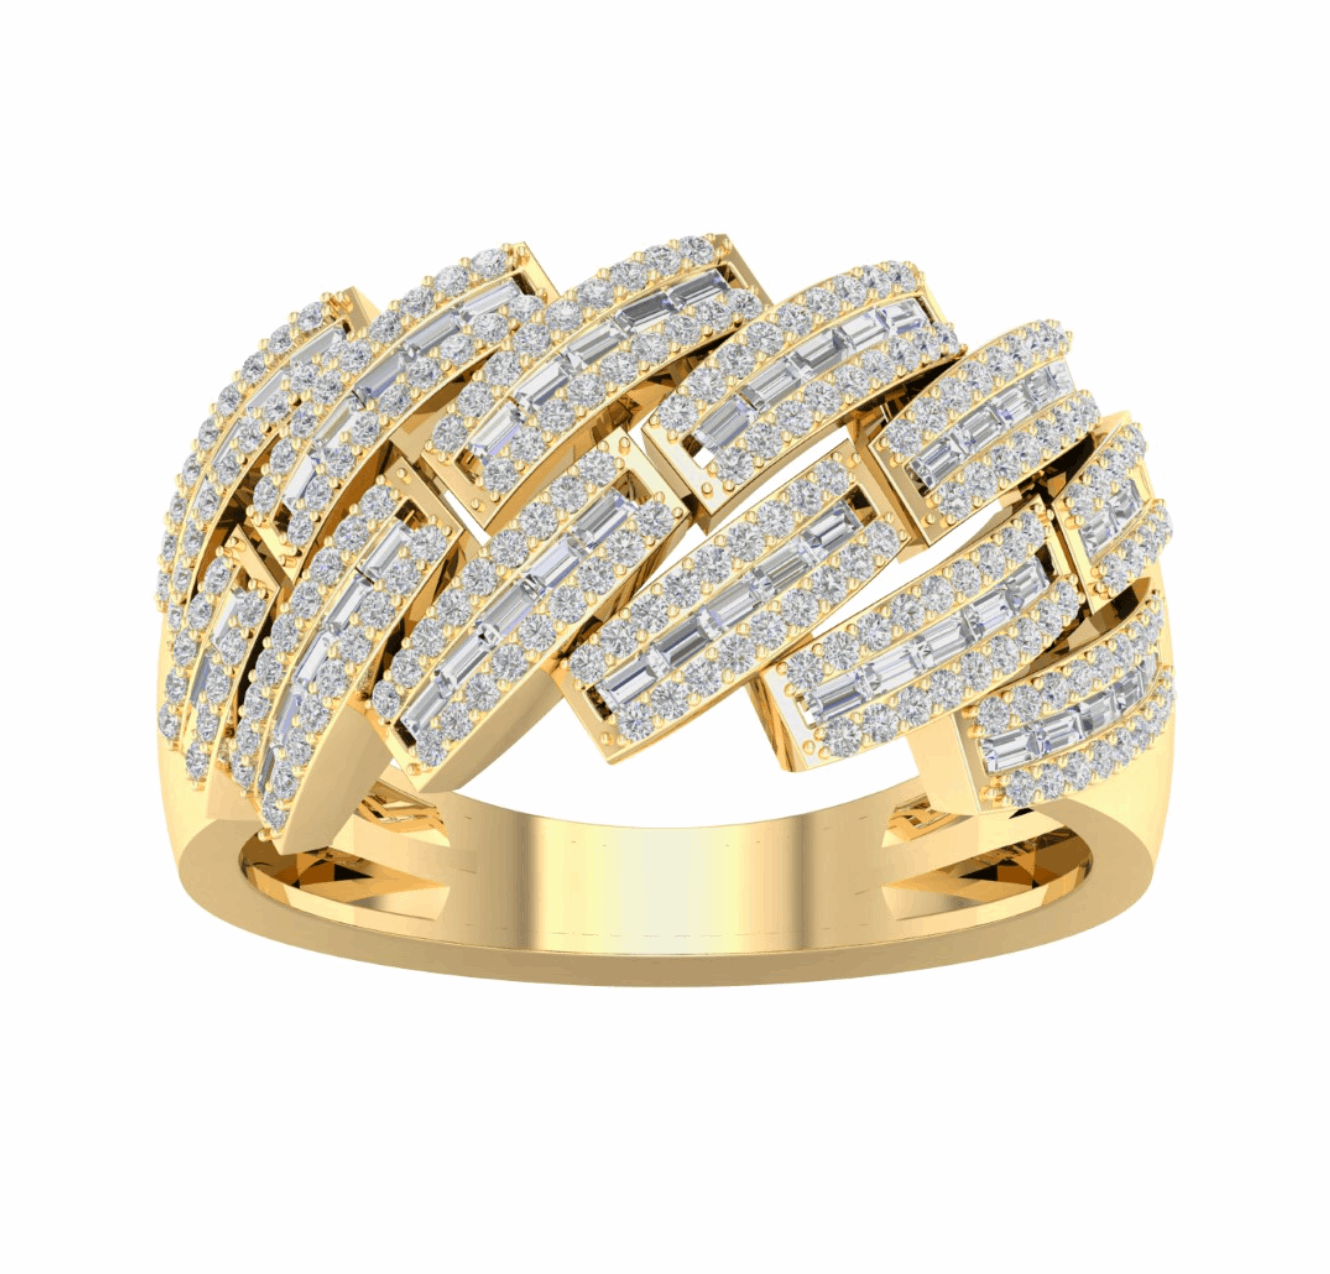 10K Gold Diamond Men's Ring 1.00CT